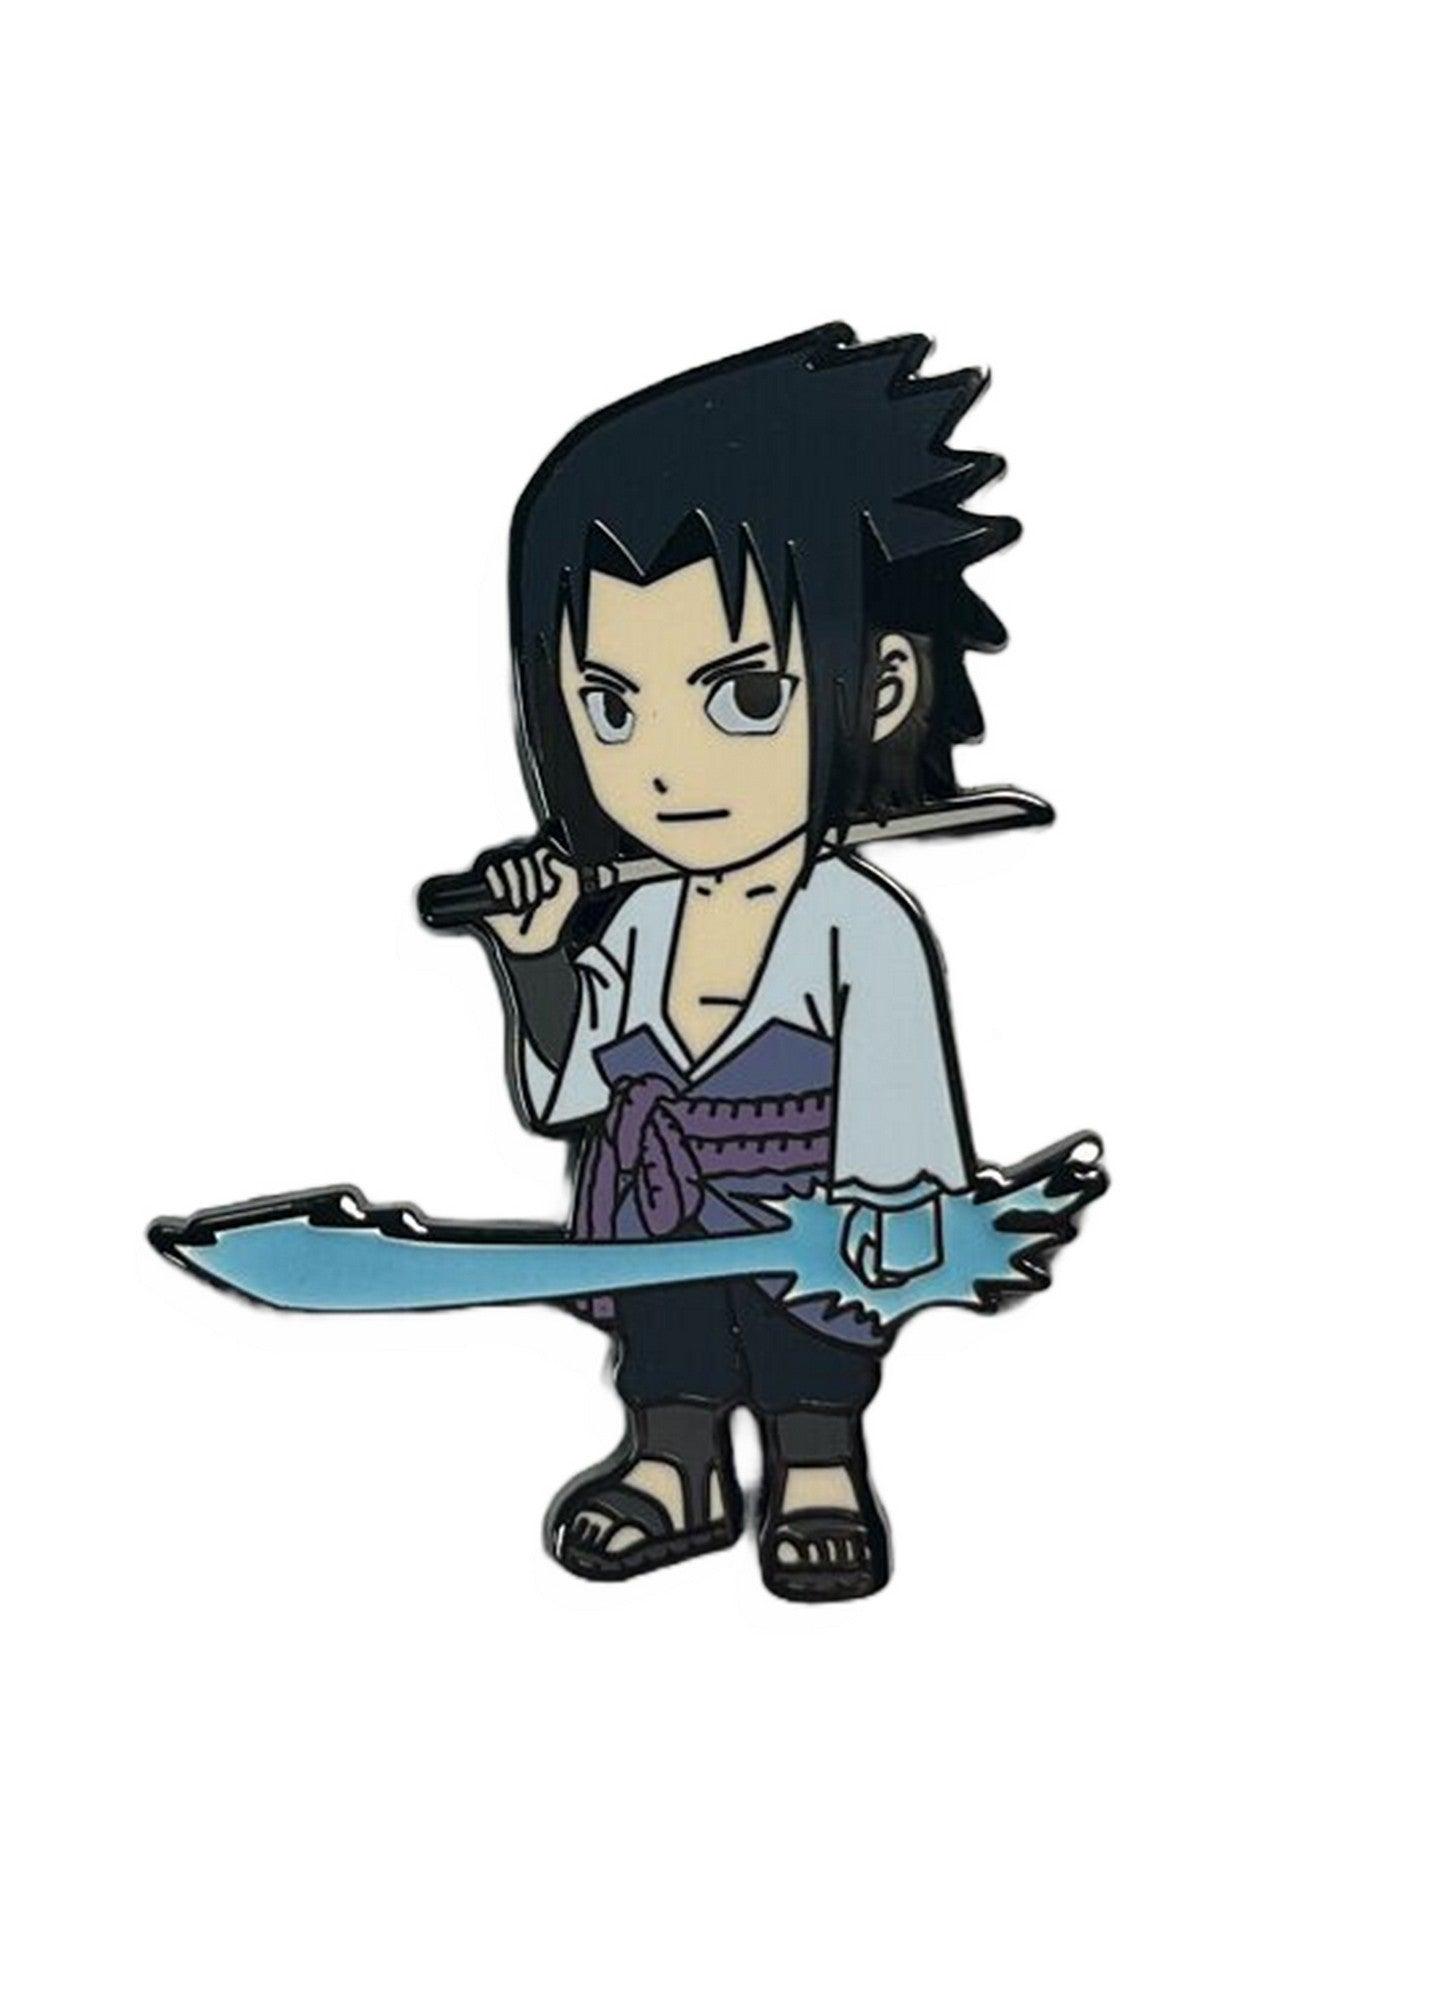 Pin by Sasuke Uchiha on naruto sasuke  Sasuke uchiha, Uchiha, Naruto and  sasuke